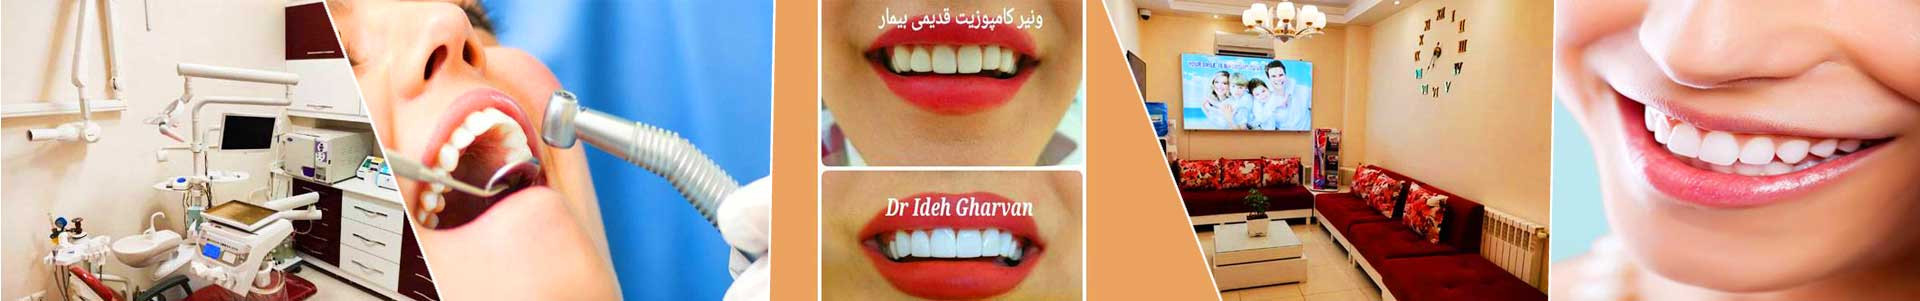 بهترین خرید دندانپزشکی قروان تهران با بیشترین درصد تخفیف در قیمت - 83%